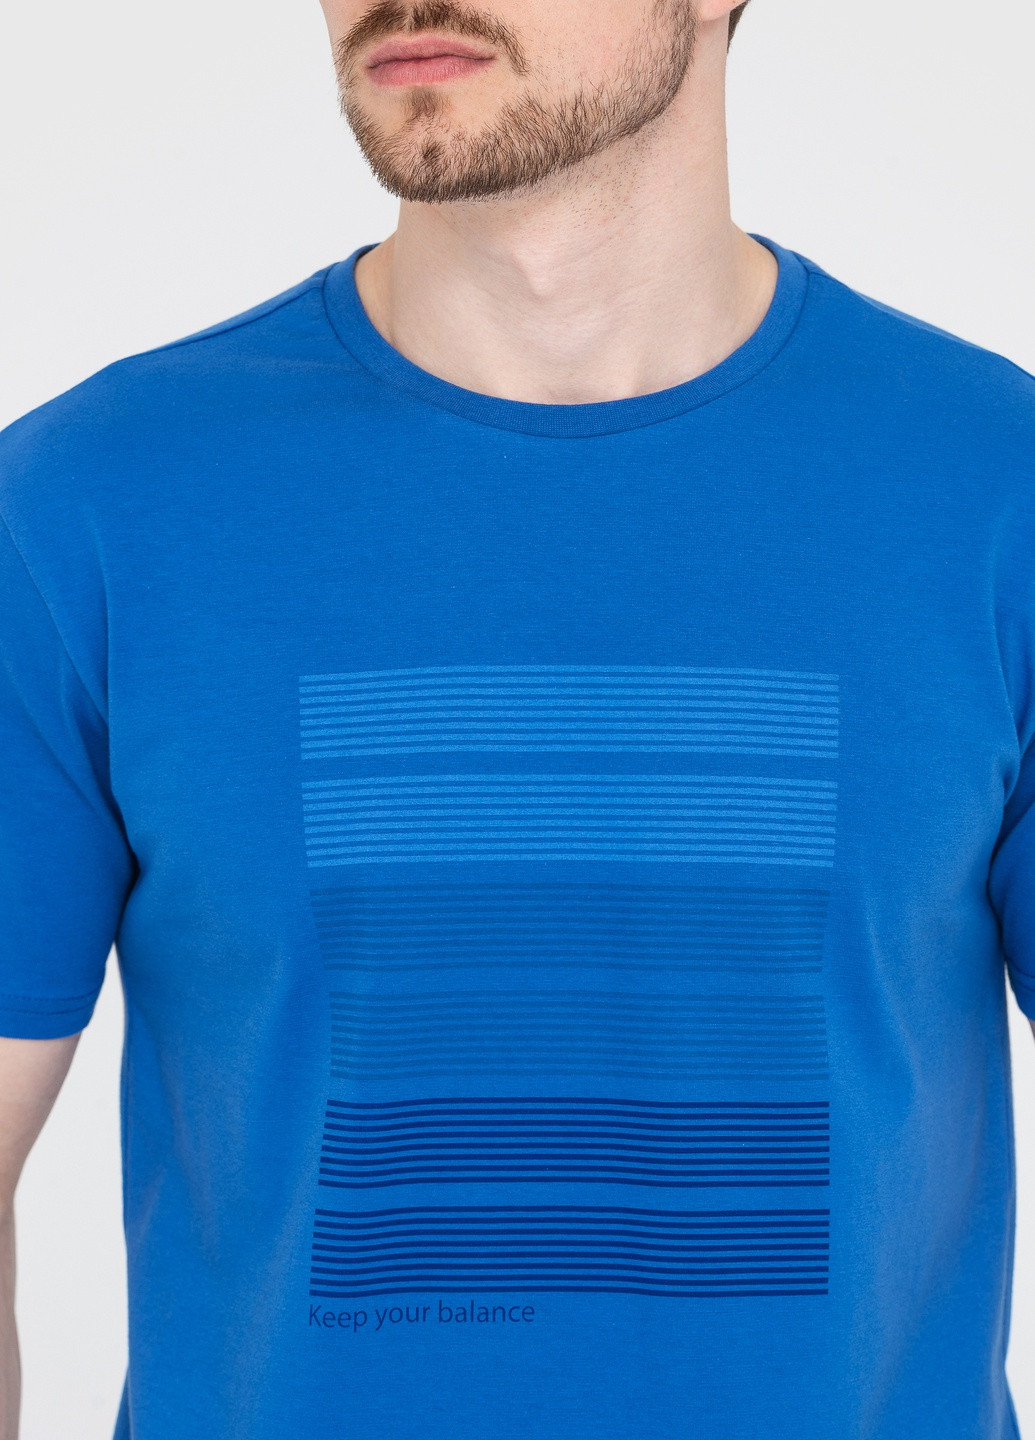 Темно-блакитна футболка для чоловіків з коротким рукавом Роза